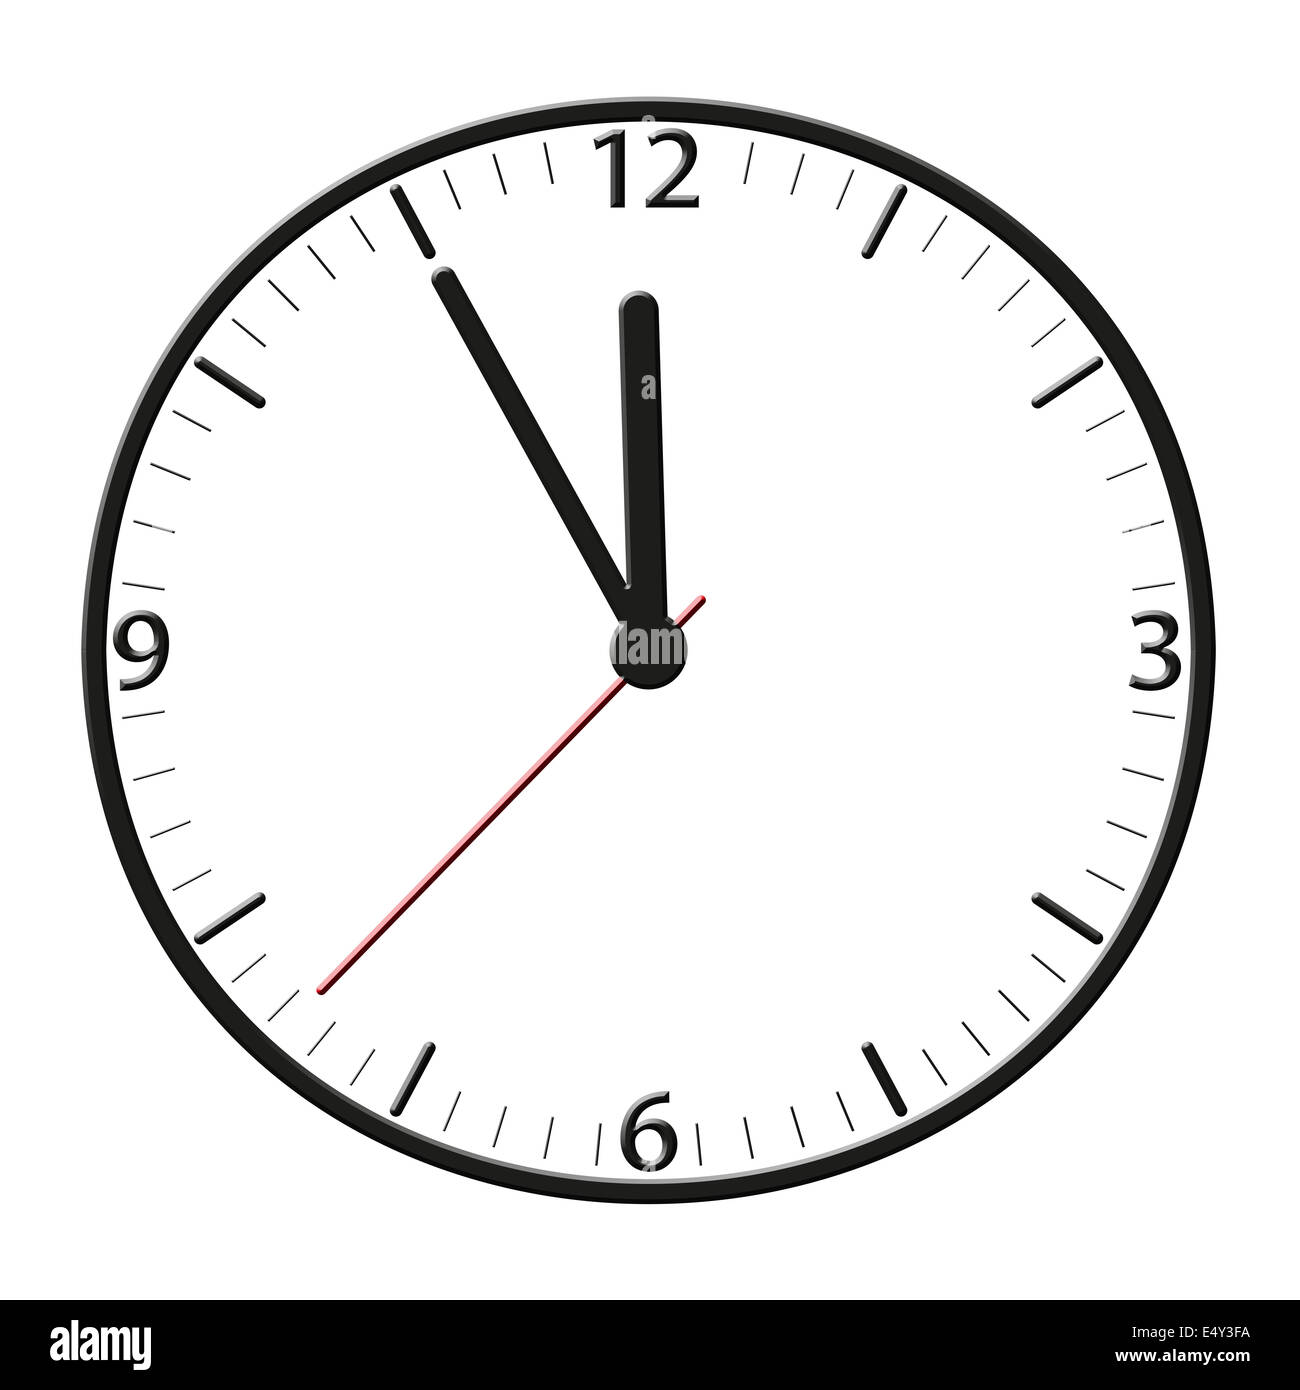 Тайминг. 56 Секунд на часы. Hour and minutes. Date Clock.